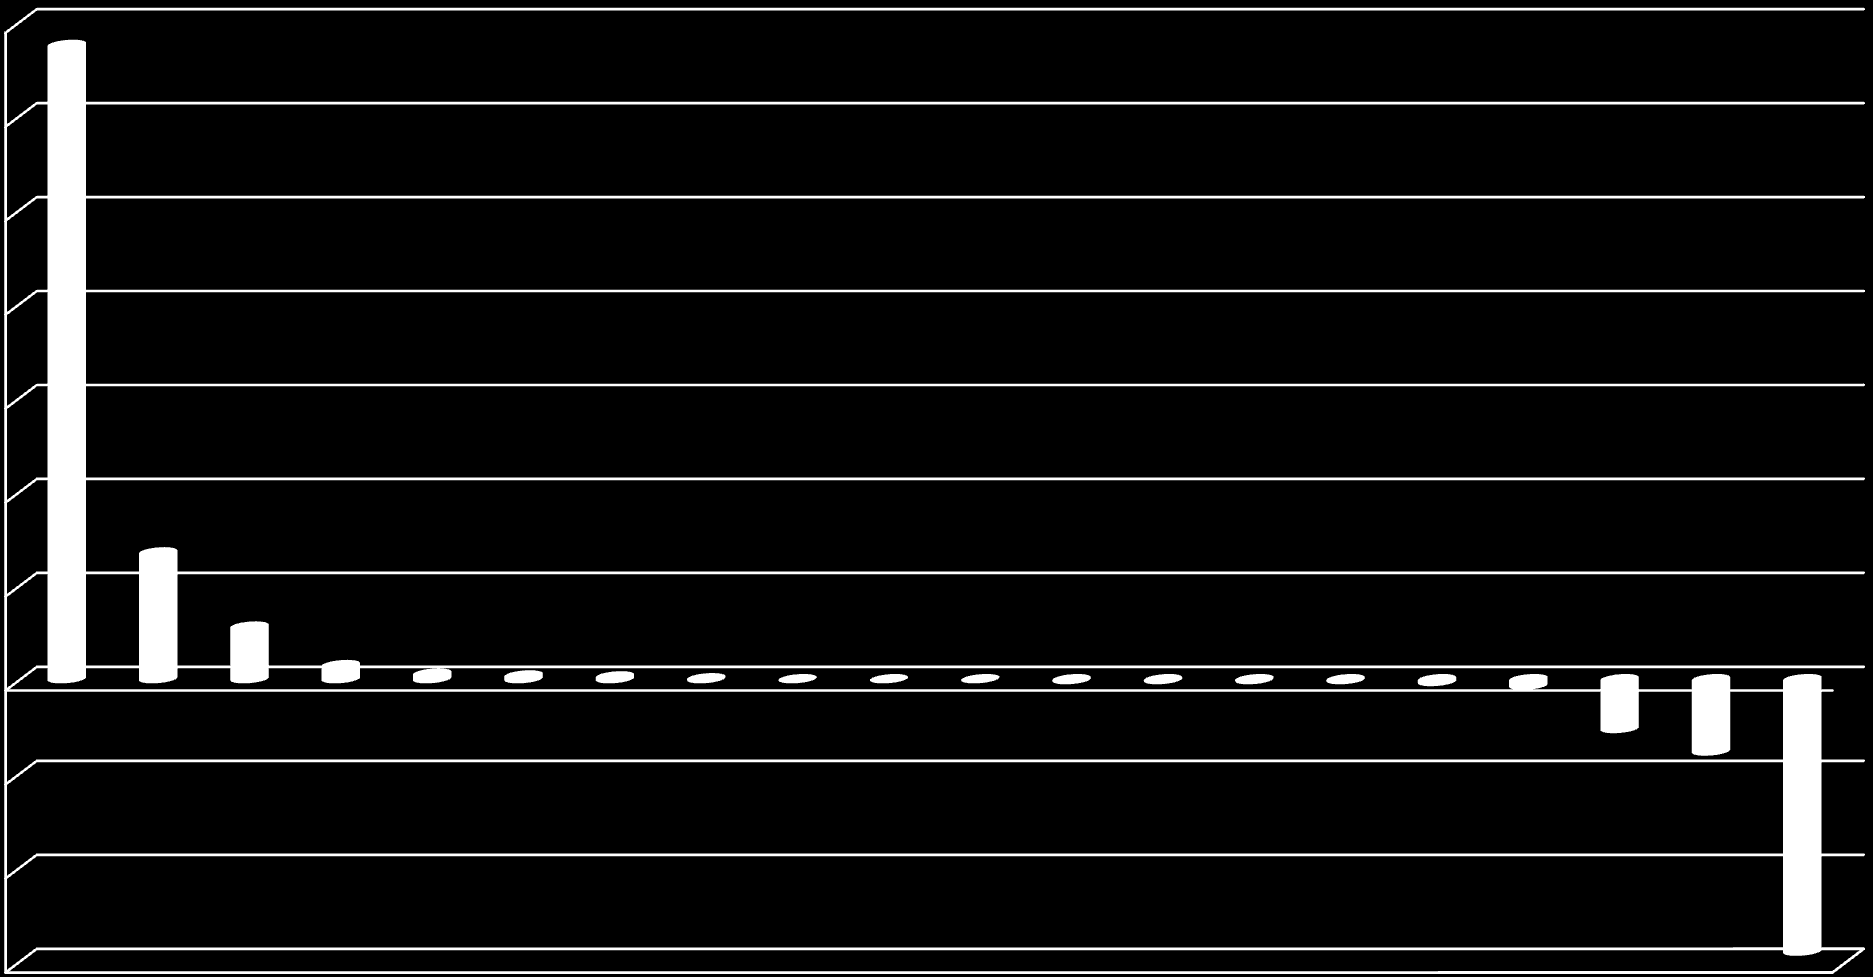 Różnica wartości obrotów (mln PLN) 7 6,75 6 5 4 3 2 1,35 1 0 0,56 0,15 0,06 0,04 0,03 0,01 0 0 0-0,01-0,01-0,01-0,01-0,03-0,07-0,53-0,77-2,9-1 -2-3 Metodyka: Różnica pomiędzy wartością obrotów zwrotu